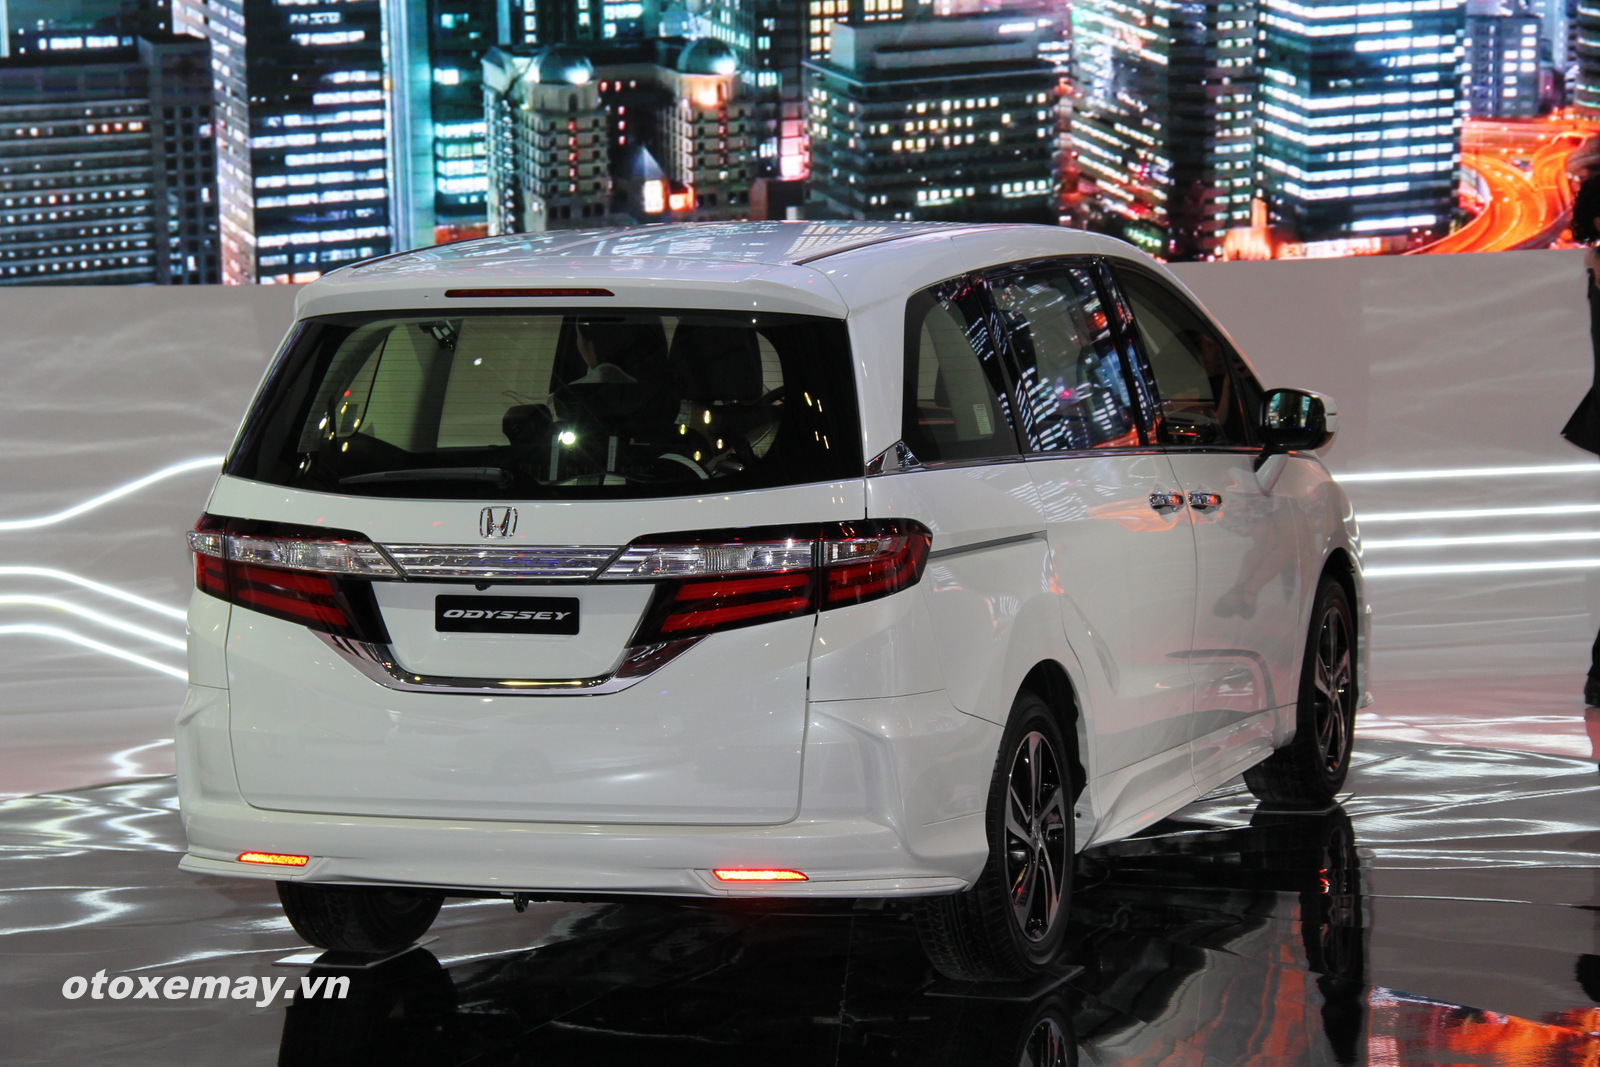 Honda Odyssey tiếp cận khách hàng toàn quốc - ảnh 3